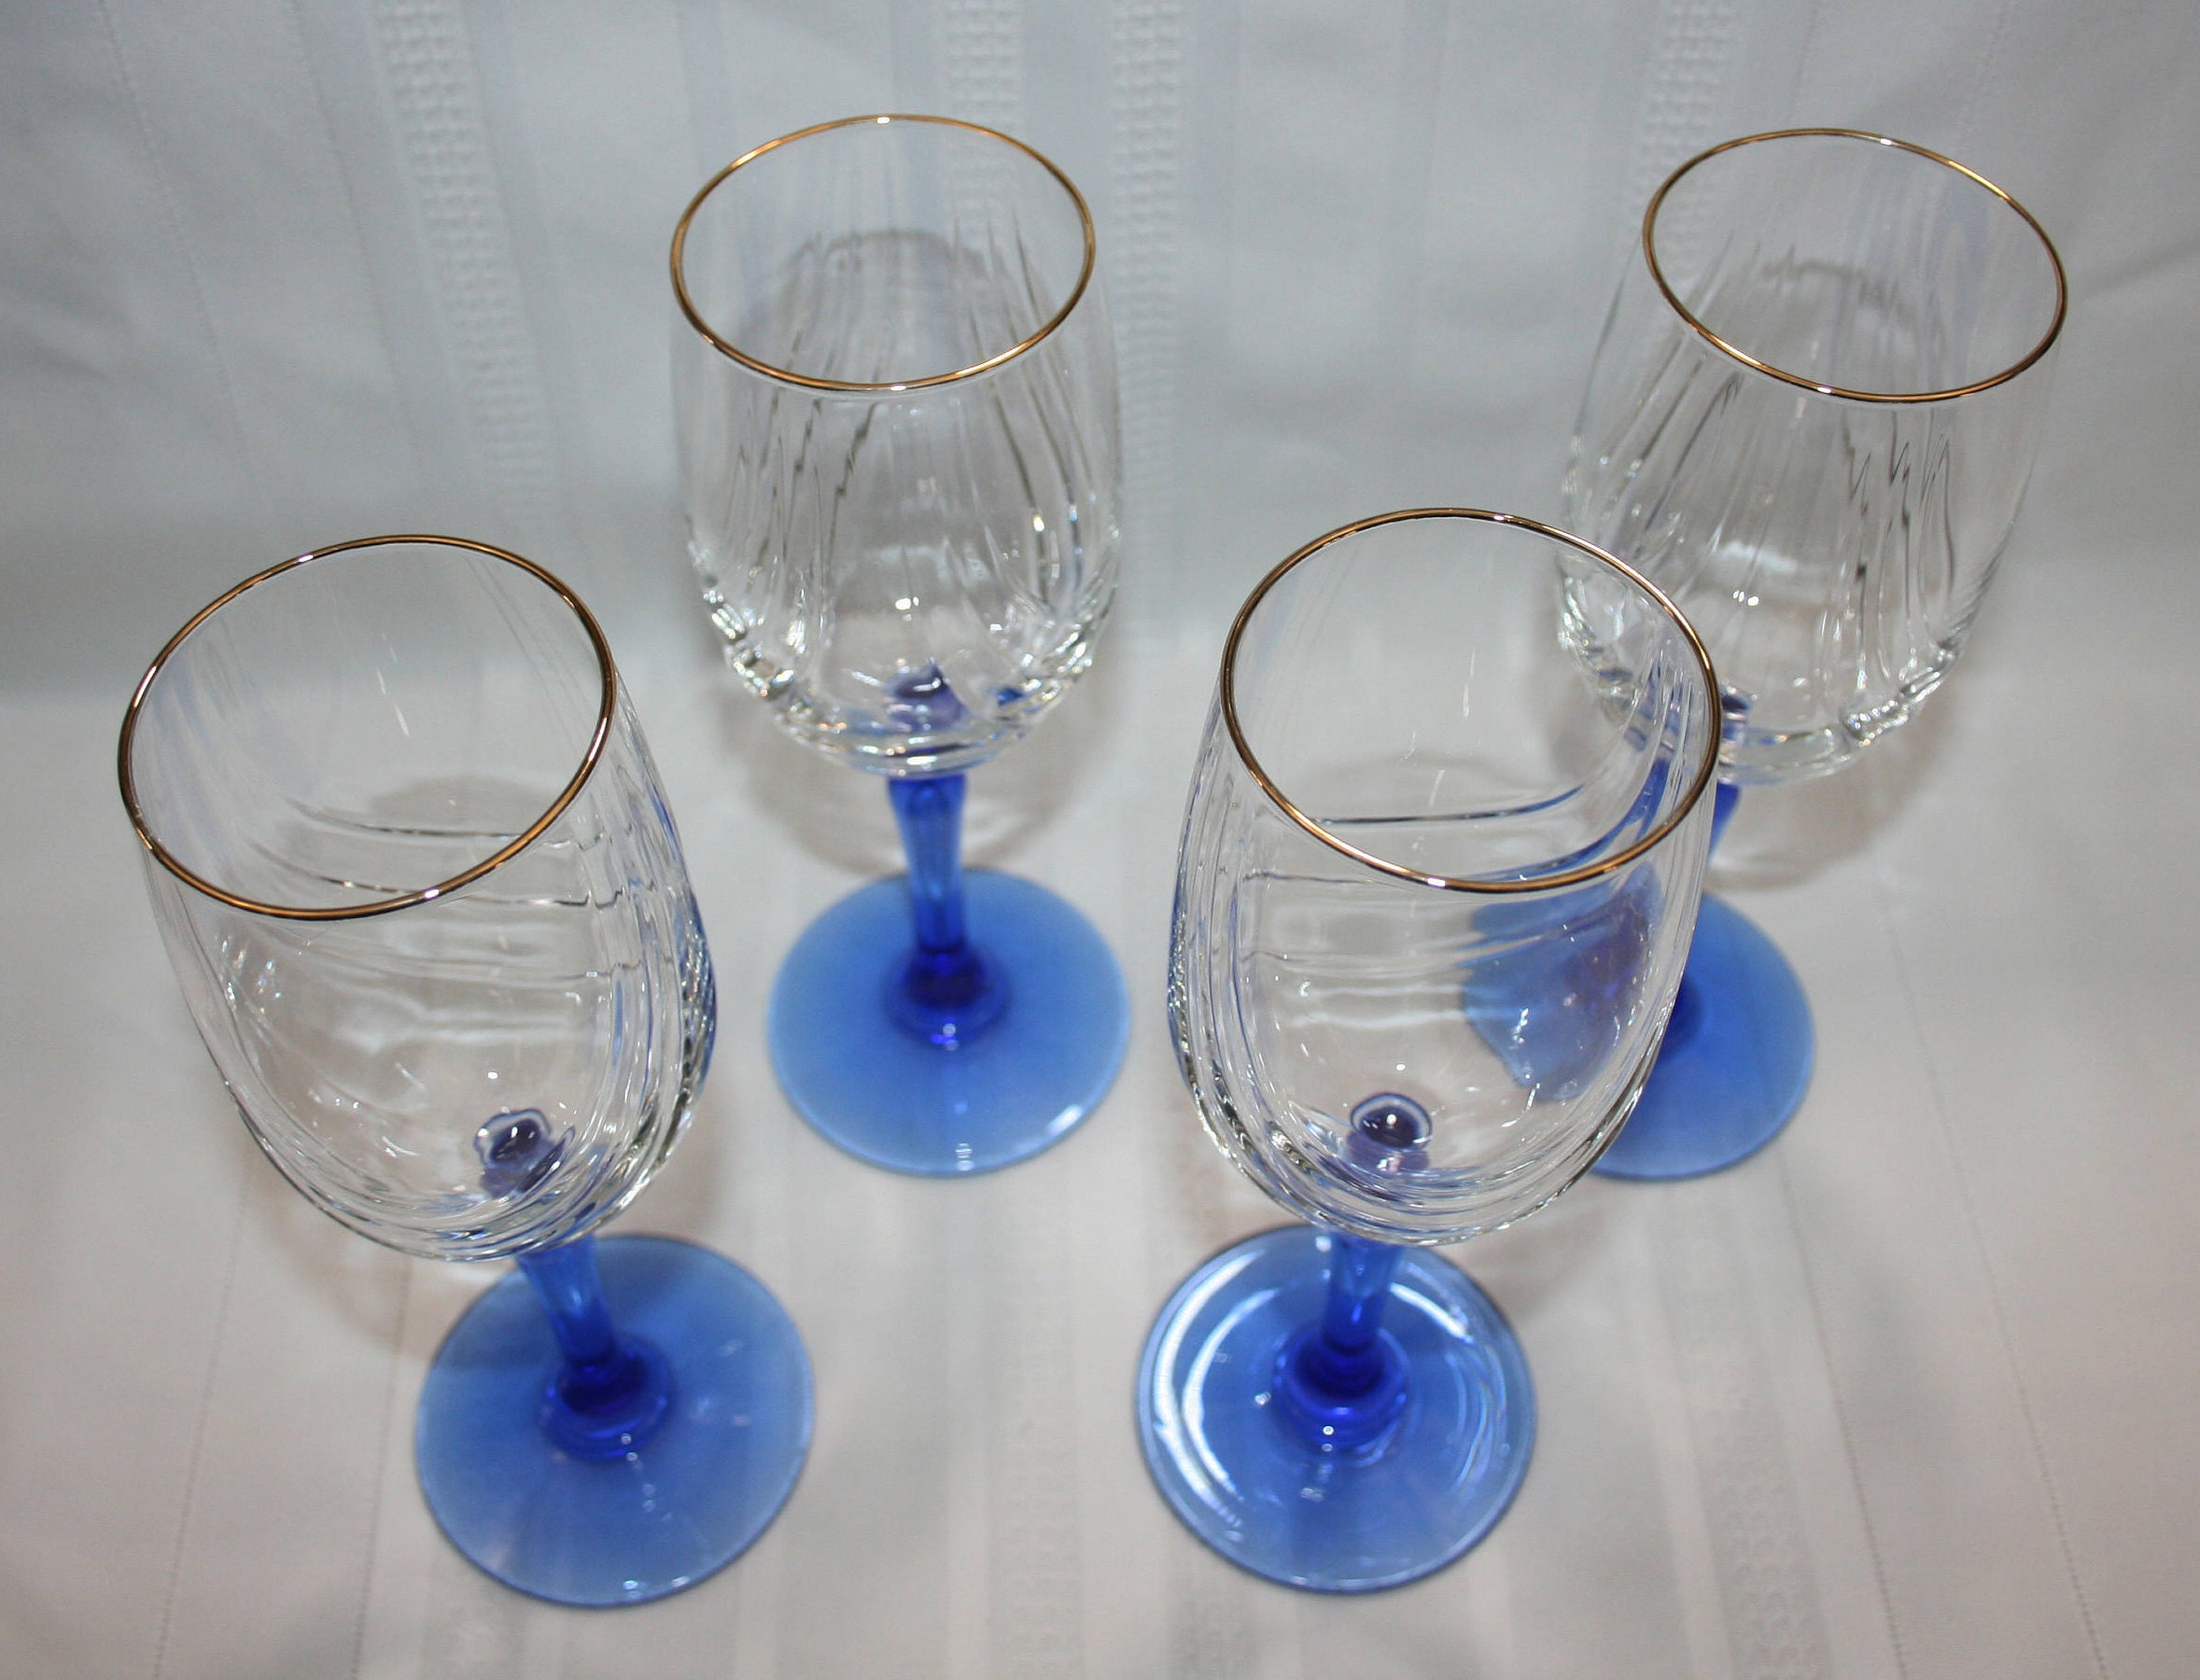 Sheridan Blue Stemmed Wine Glass